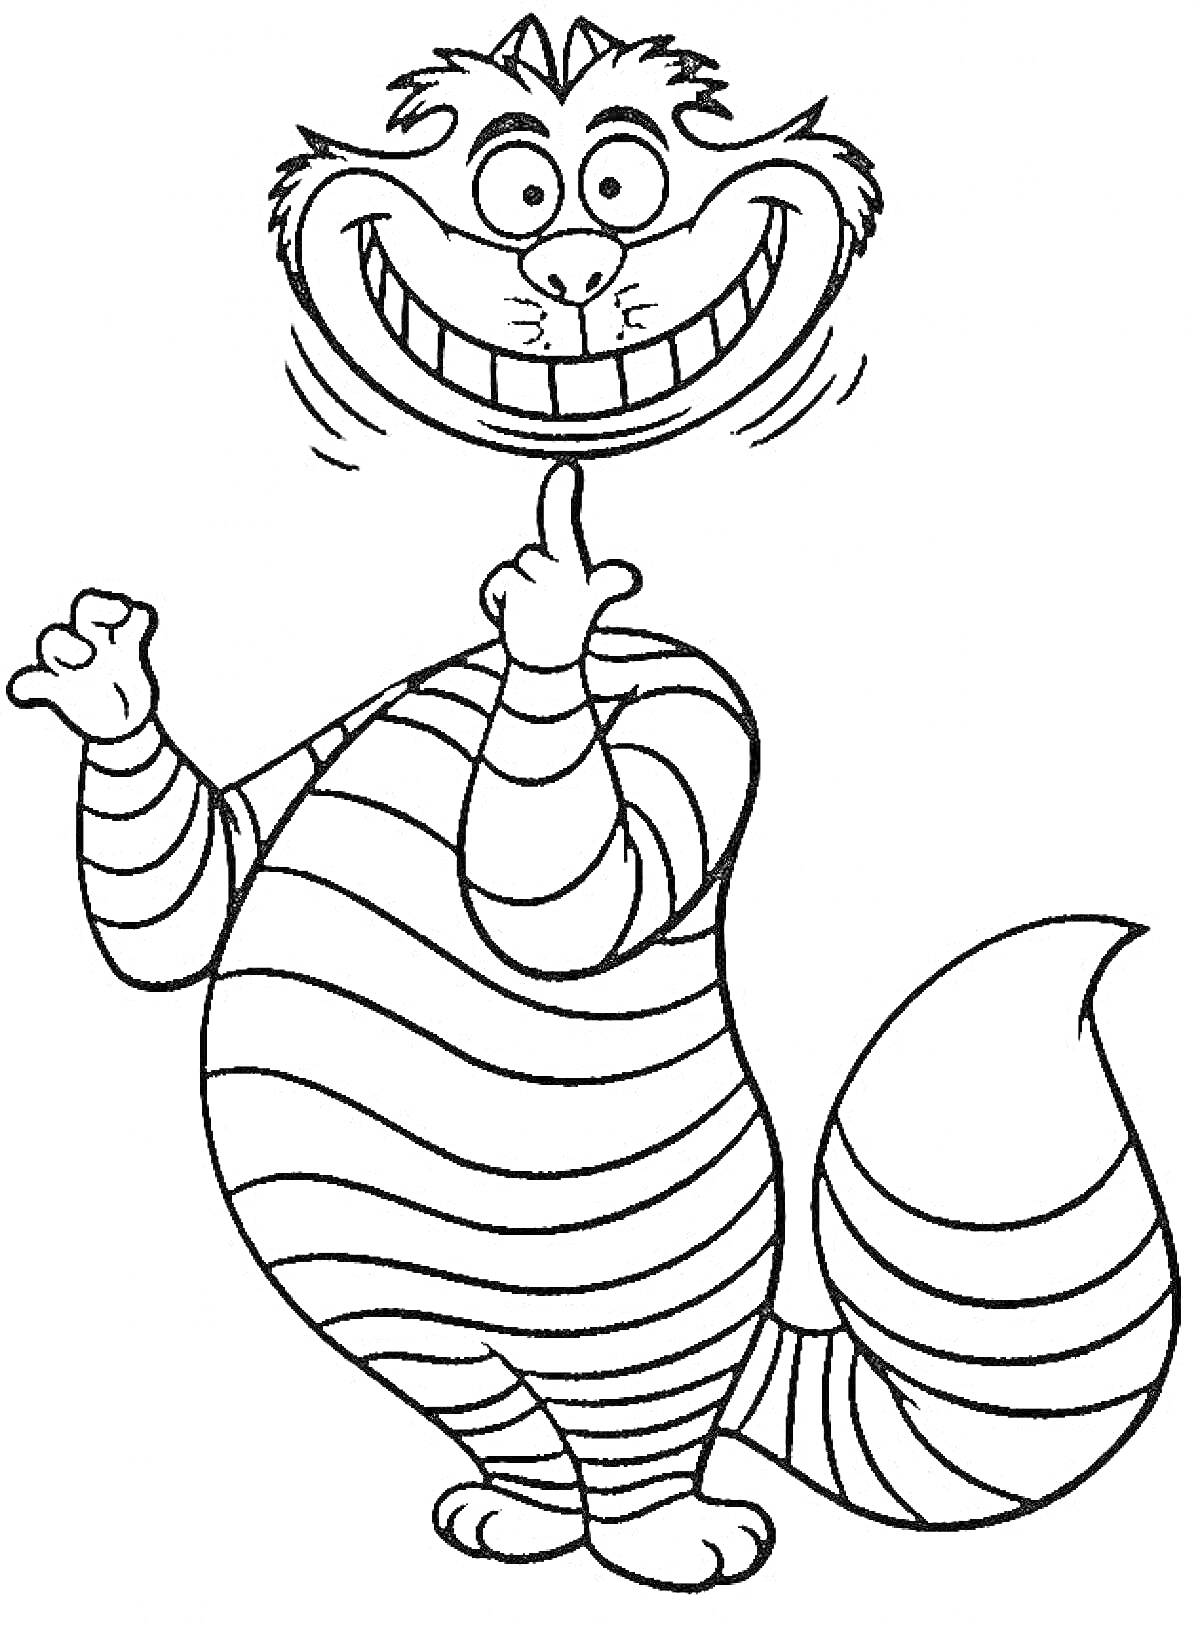 Раскраска Чеширский кот улыбается, стоя на задних лапах и показывая один палец вверх, полосатый хвост